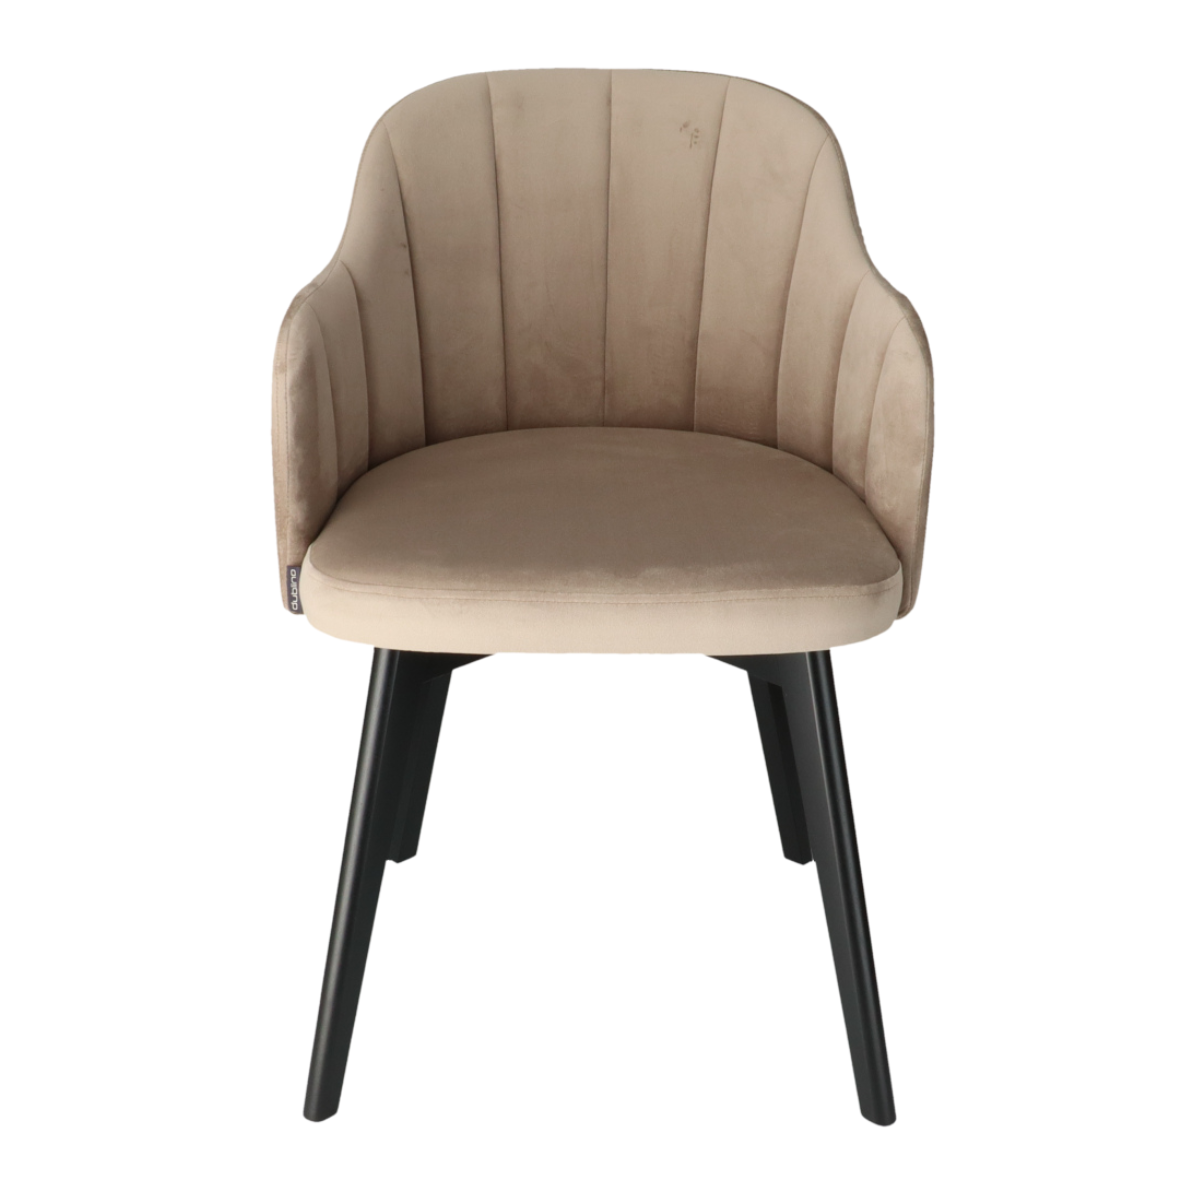 T NIKOL Barna design Kárpitos beltéri szék